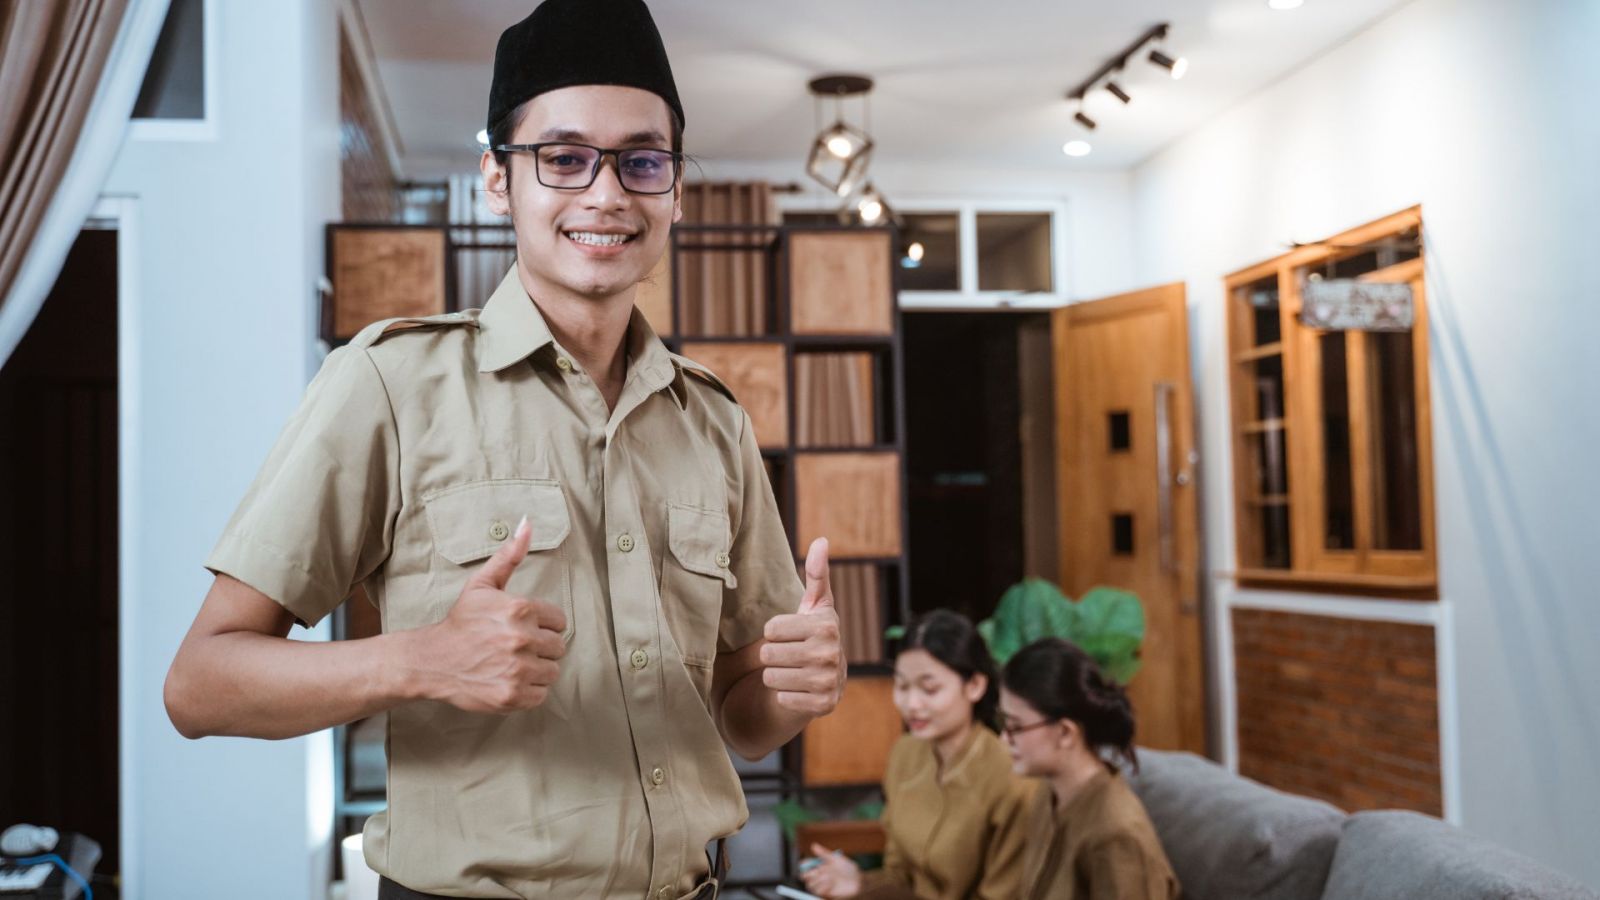 Bangga menjadi guru untuk seluruh anak di Indonesia